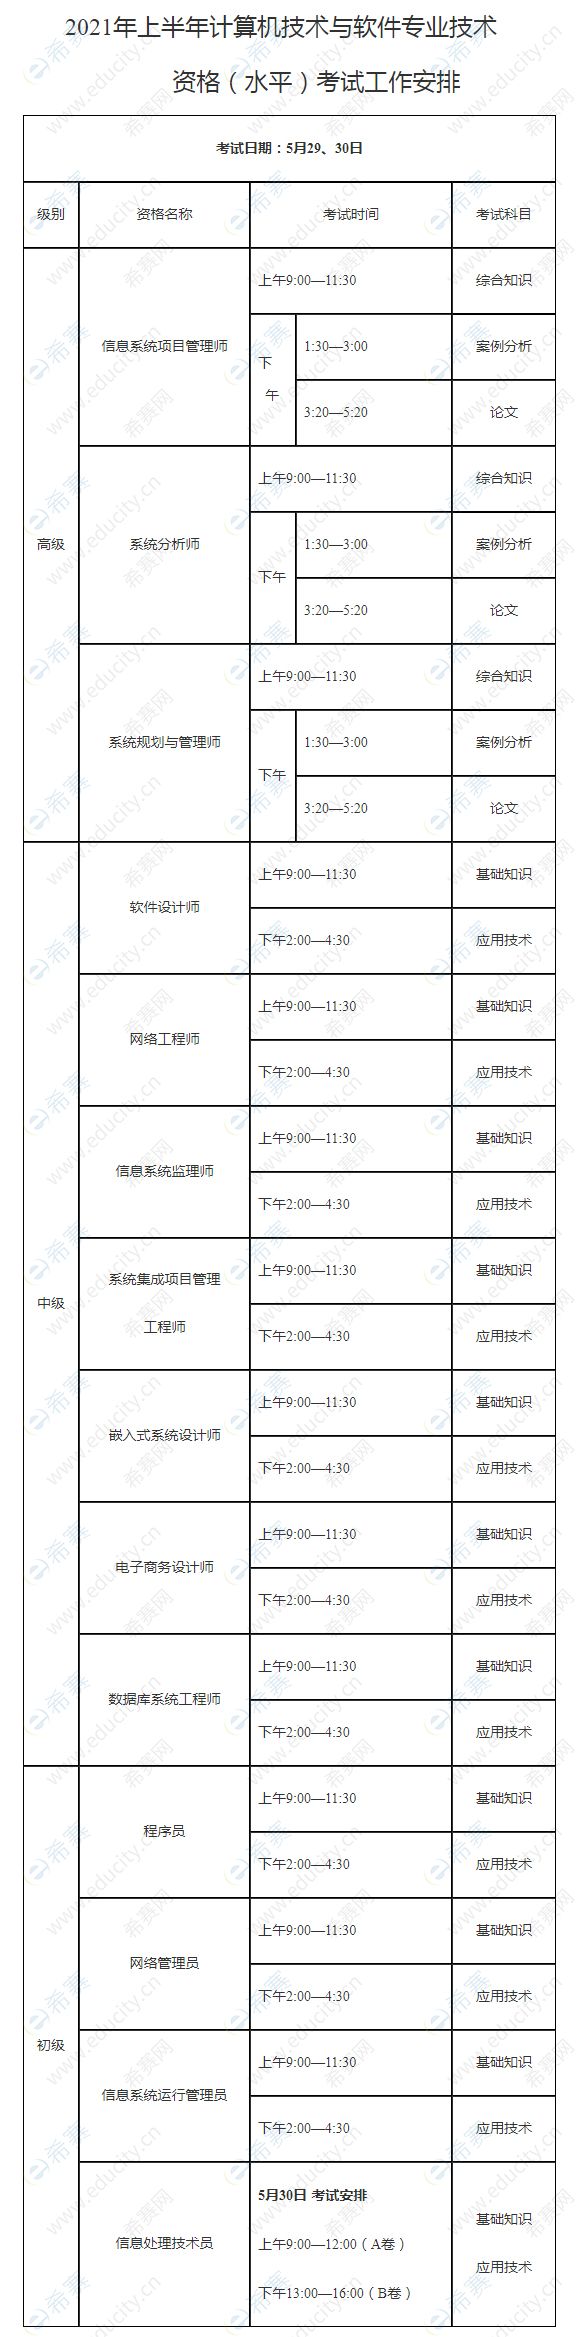 2021年上半年广西软考考试时间安排.jpg